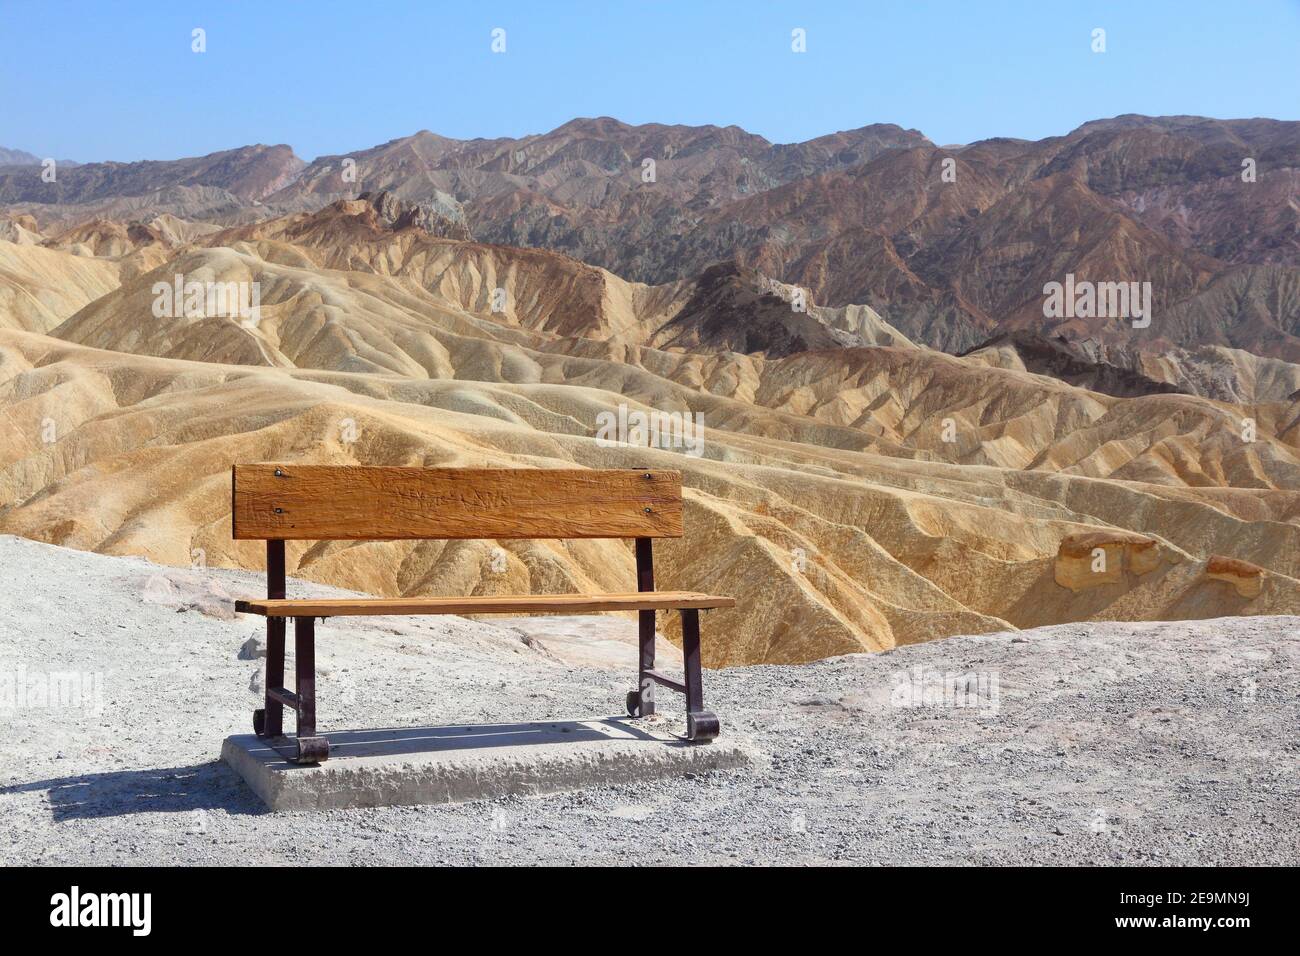 Zabriskie Point im Death Valley National Park. Kalifornien Wüste Landschaft. Stockfoto